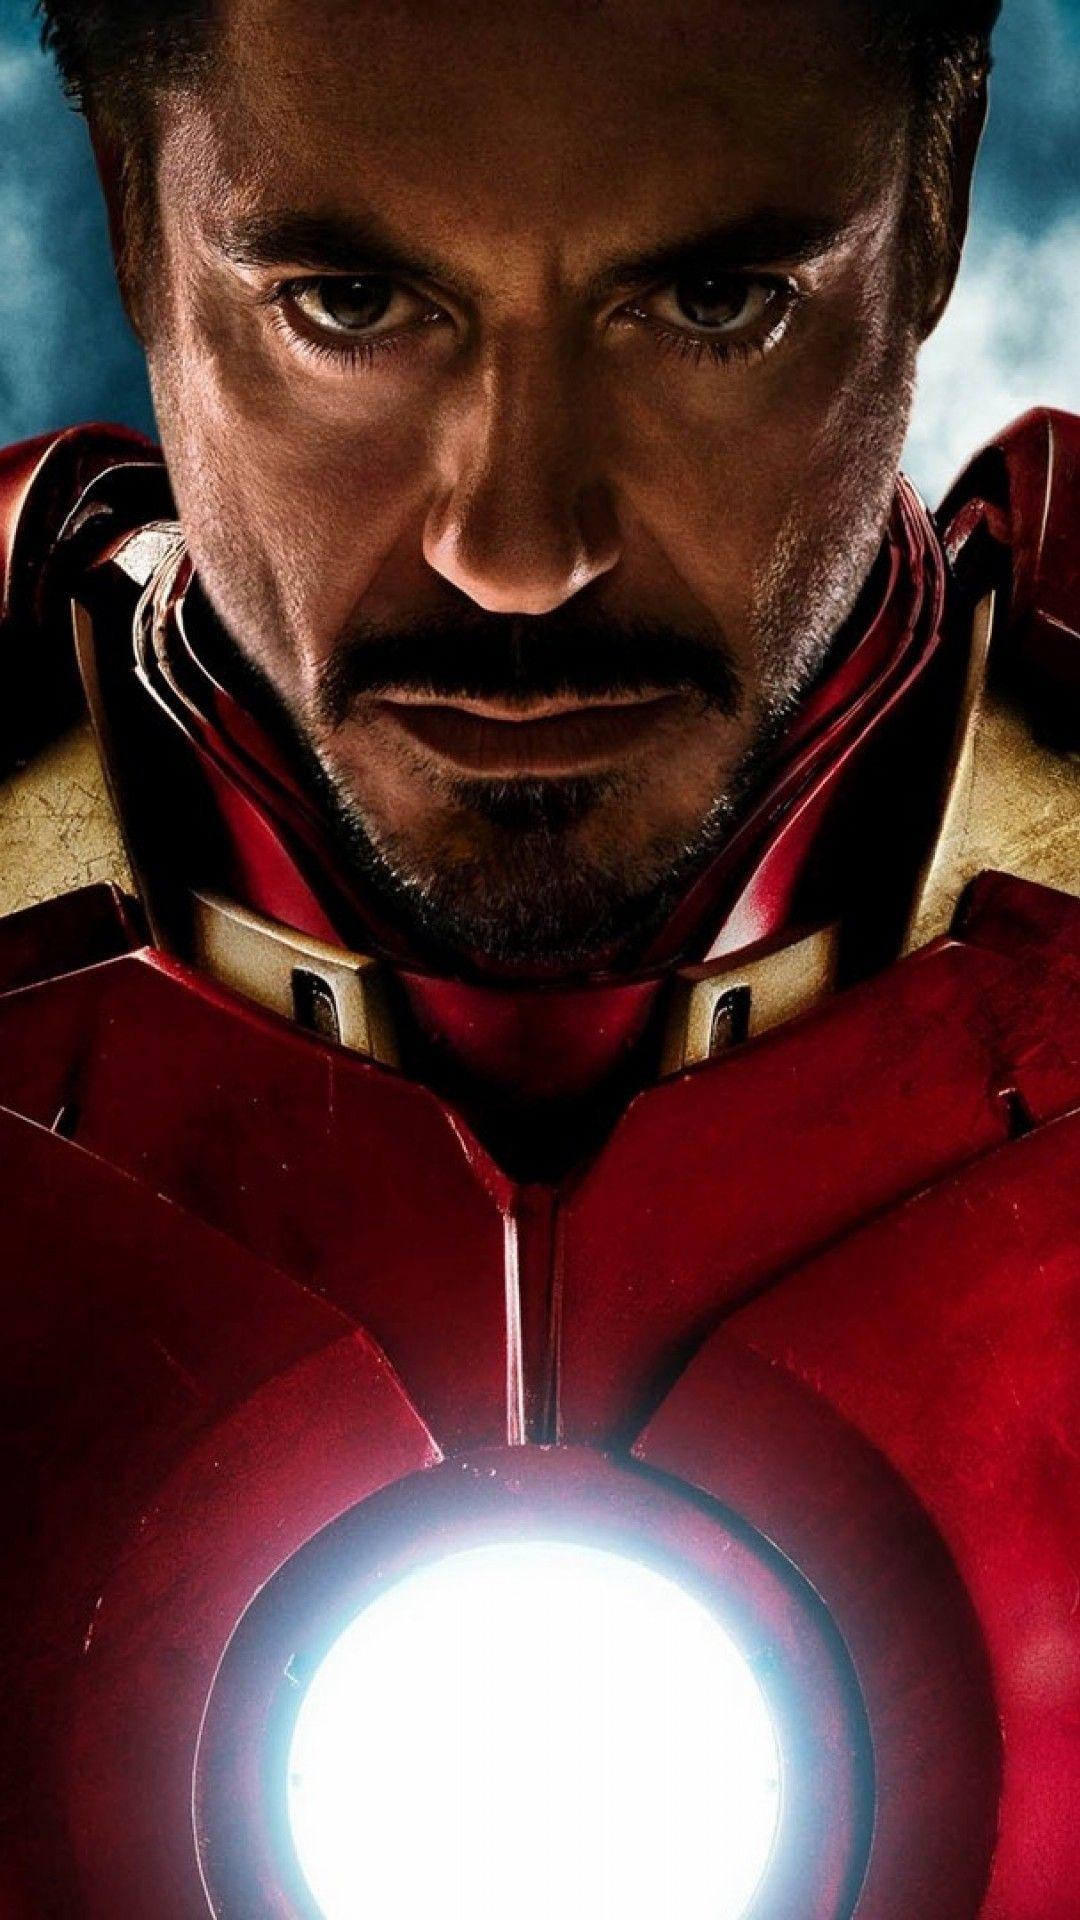 Tony Stark Avengers Movie Wallpapers - Top Free Tony Stark Avengers